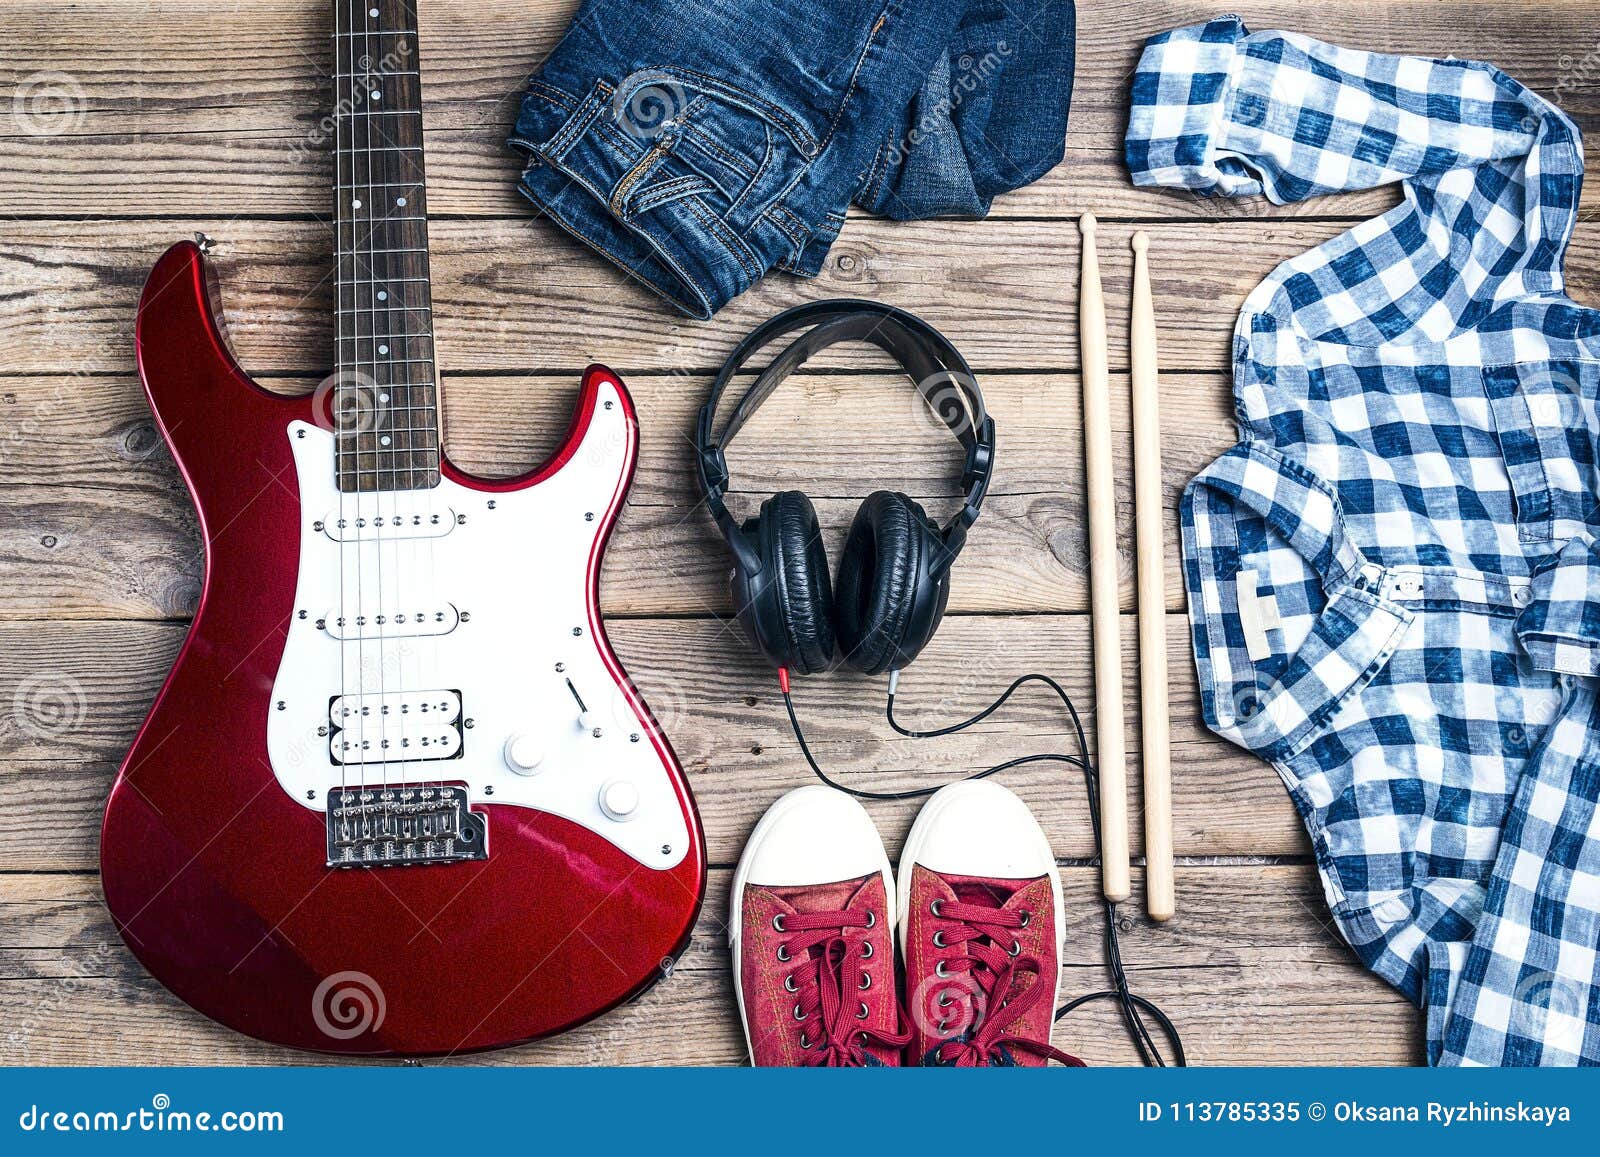 Los Accesorios De Una Estrella Del Rock: Guitarra Eléctrica, Palillos, Clo  Imagen de archivo - Imagen de azul, eléctrico: 113785335